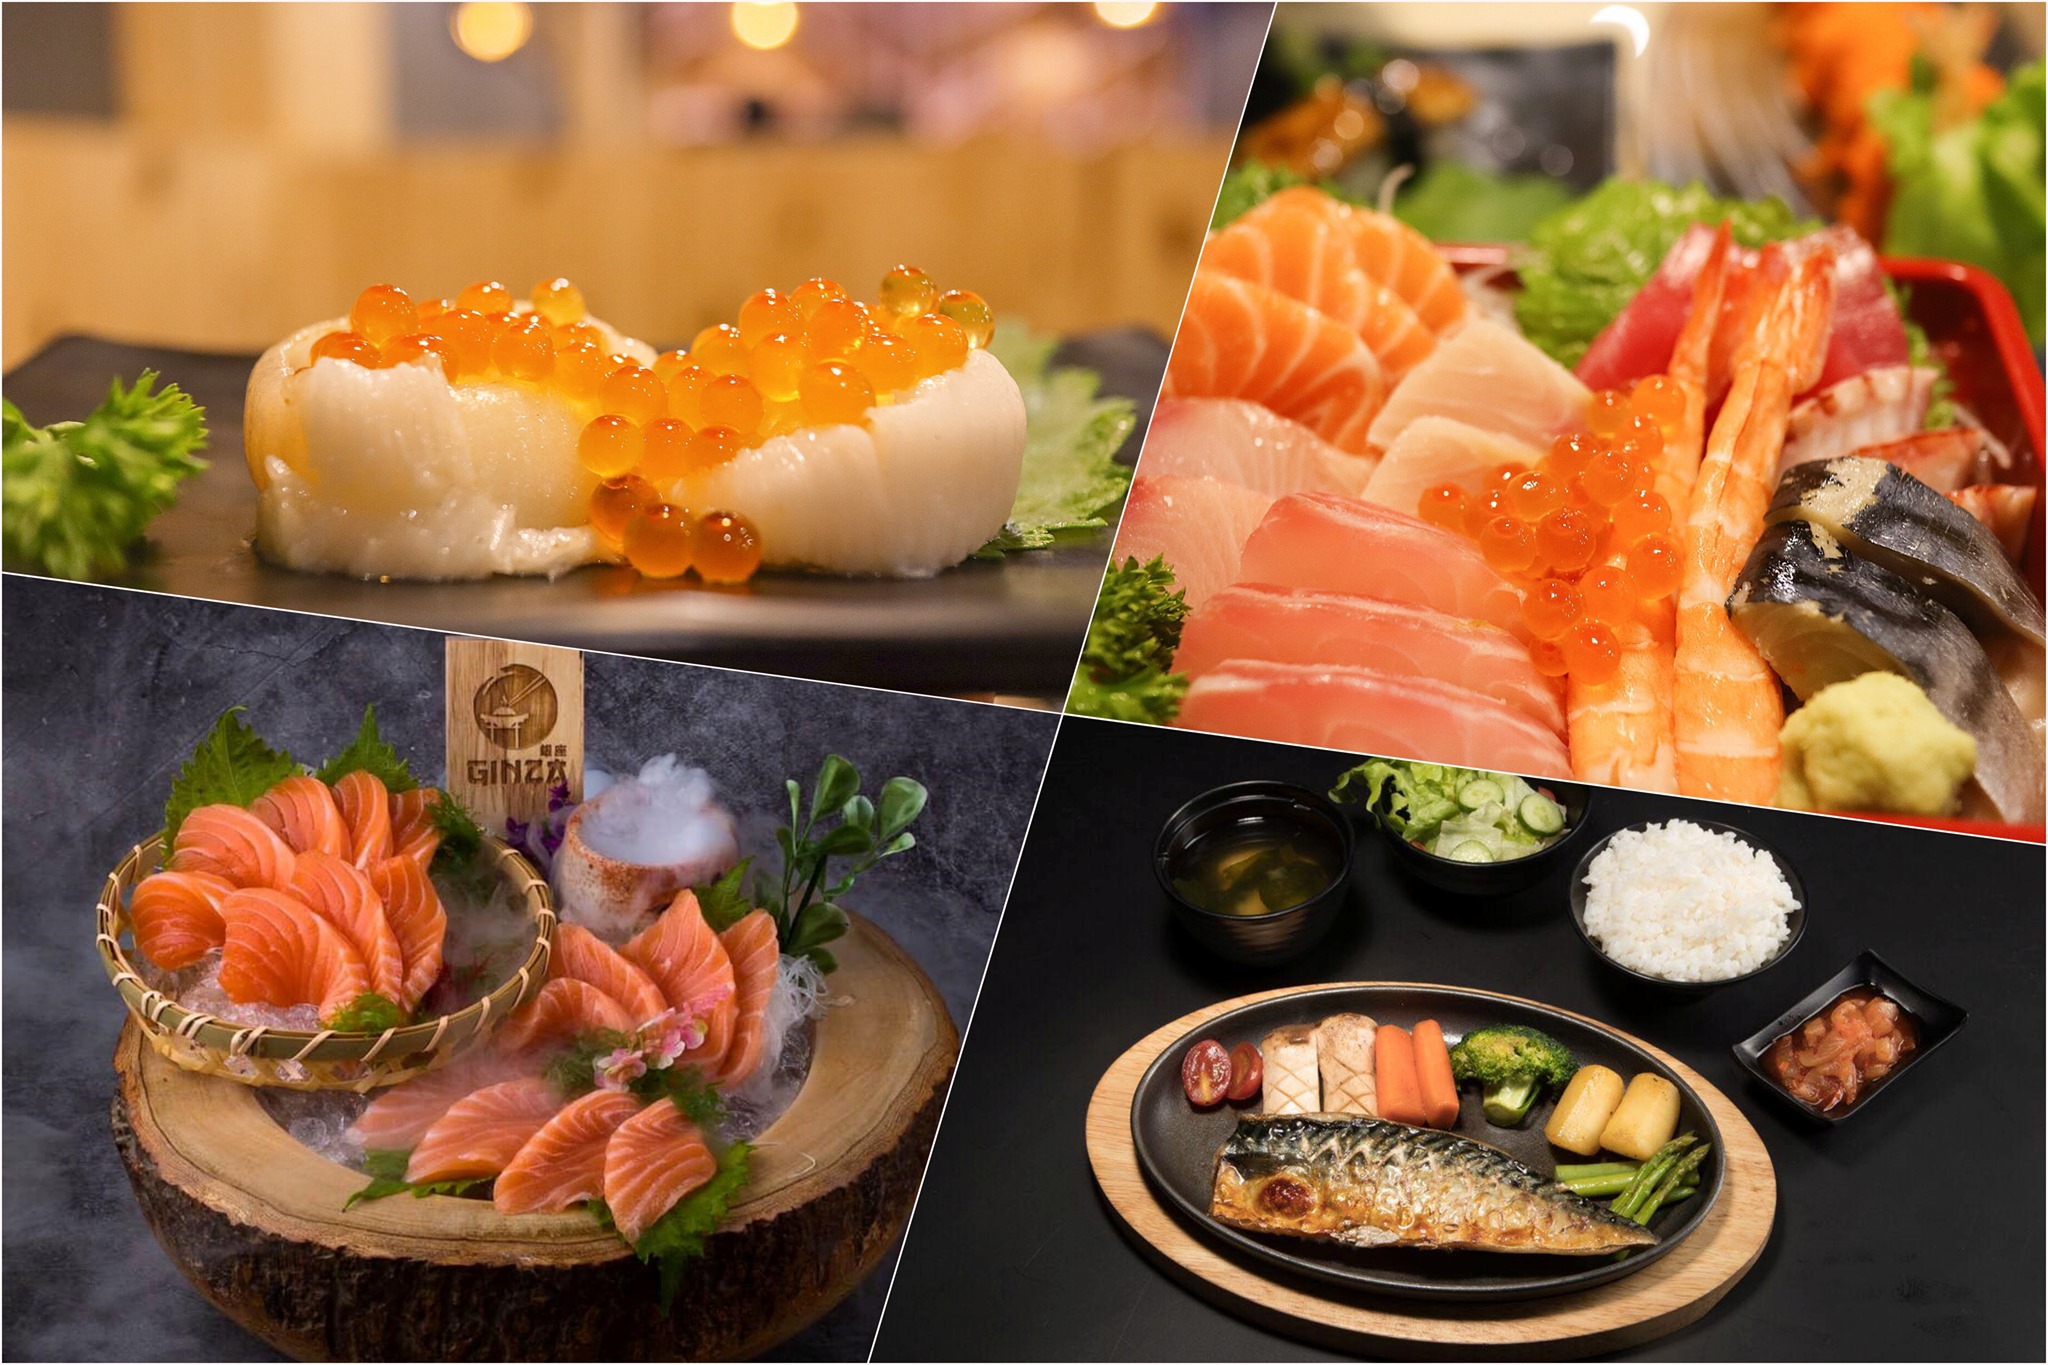  26.Ginza-Izakaya-ร้านอาหารญี่ปุ่นเด็ดๆ-ประจำอำเภอเมือง-นครศรีธรรมราช-แอดมินกินมานานน-มีเมนูใหม่ๆเพิ่มขึ้นเรื่อยๆนะครับเมนูเยอะมวากกกจริงๆ-https://nakhonsidee.com/show/read/1/159
 อำเภอเมือง,ของกิน,ร้านอร่อย,ที่พัก,นครศรี,โรงแรม,รีสอร์ท,ร้านอาหาร